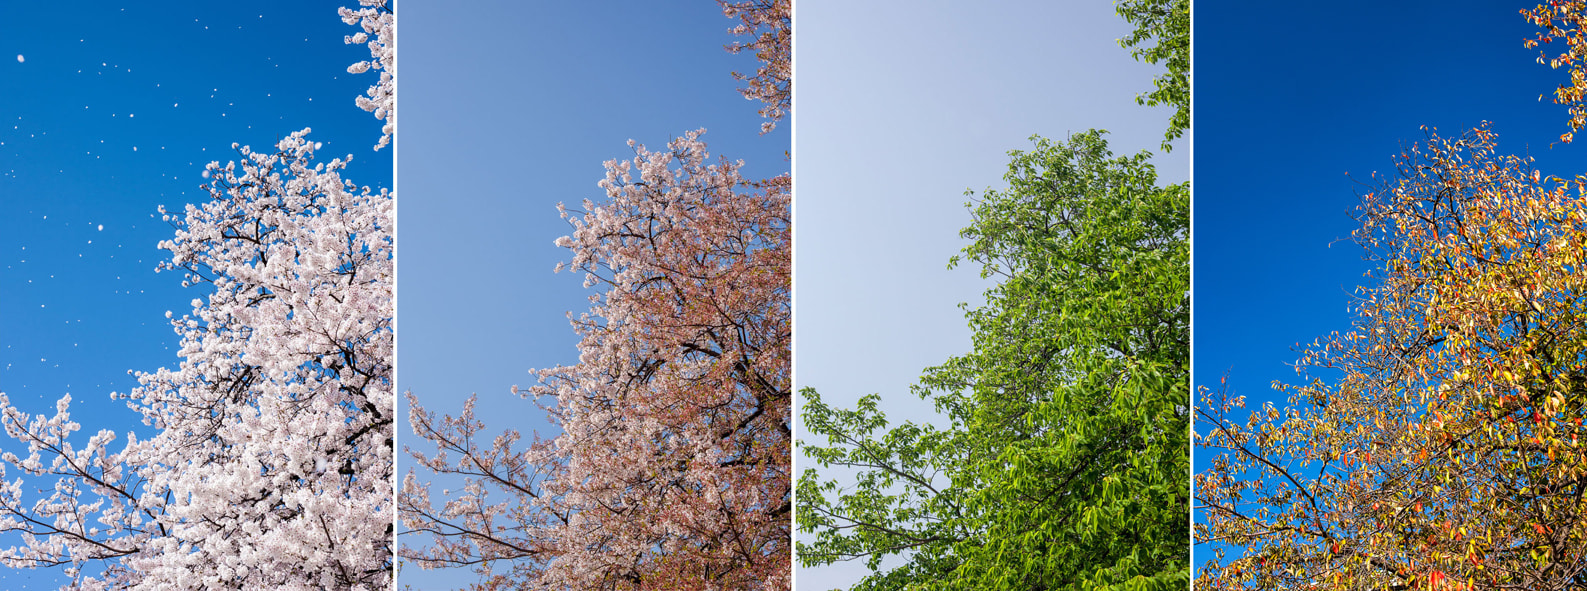 Canon EOS-1Ds Mark III + Canon EF 35-80mm f/4-5.6 sample photo. Sakura tree no. 29 photography